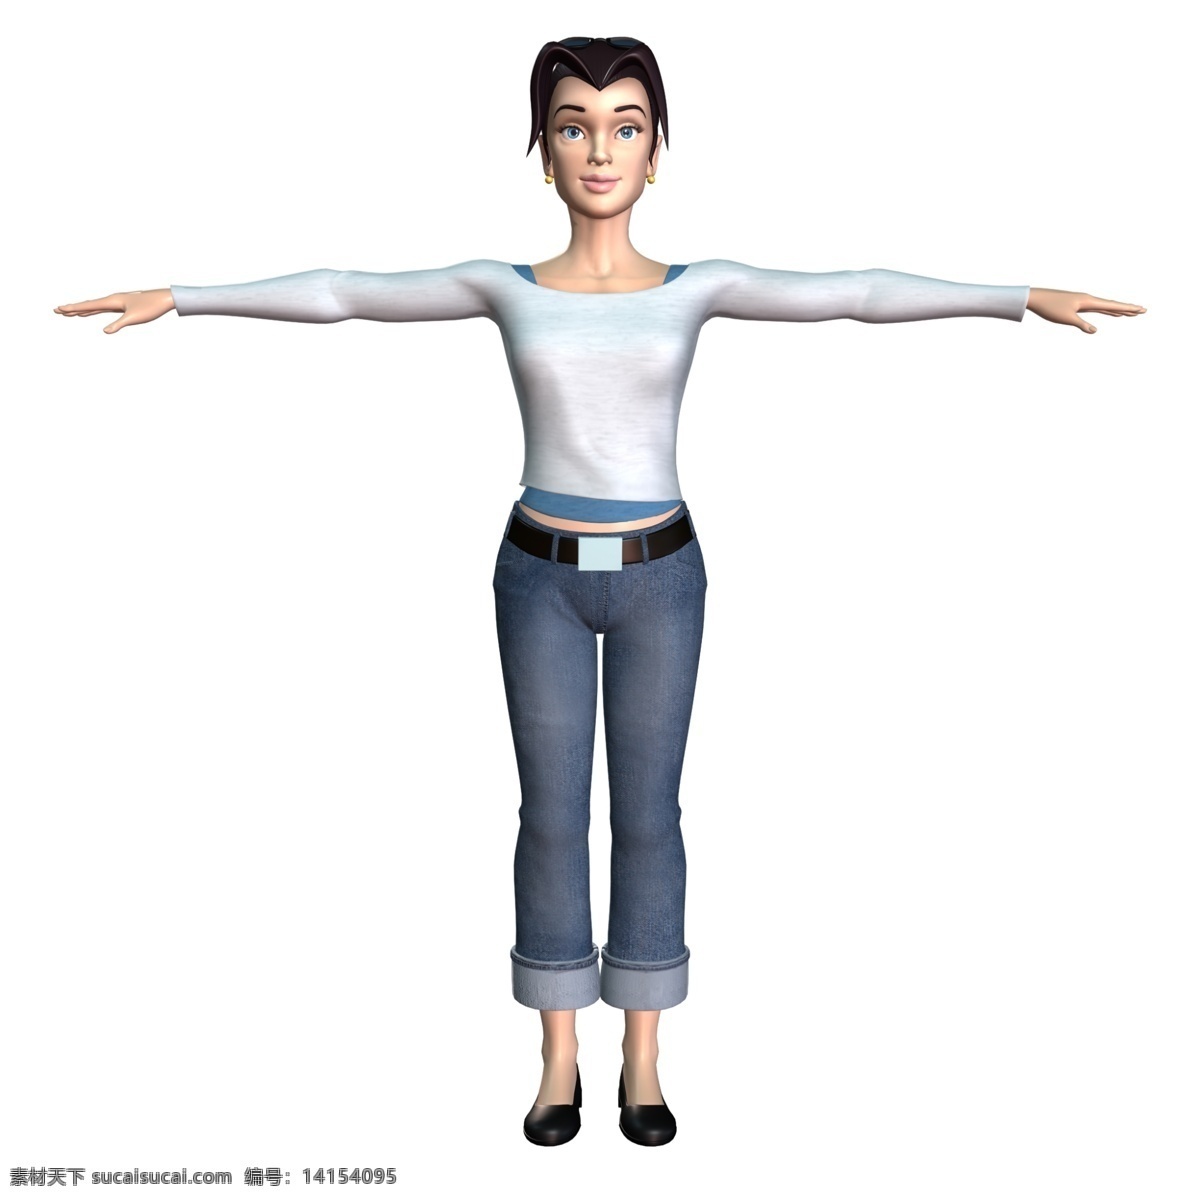 女式 休闲装 3d 3d设计模型 成人 动漫 角色 卡通 人物 女式休闲装 站立 游戏 展示模型 源文件 psd源文件